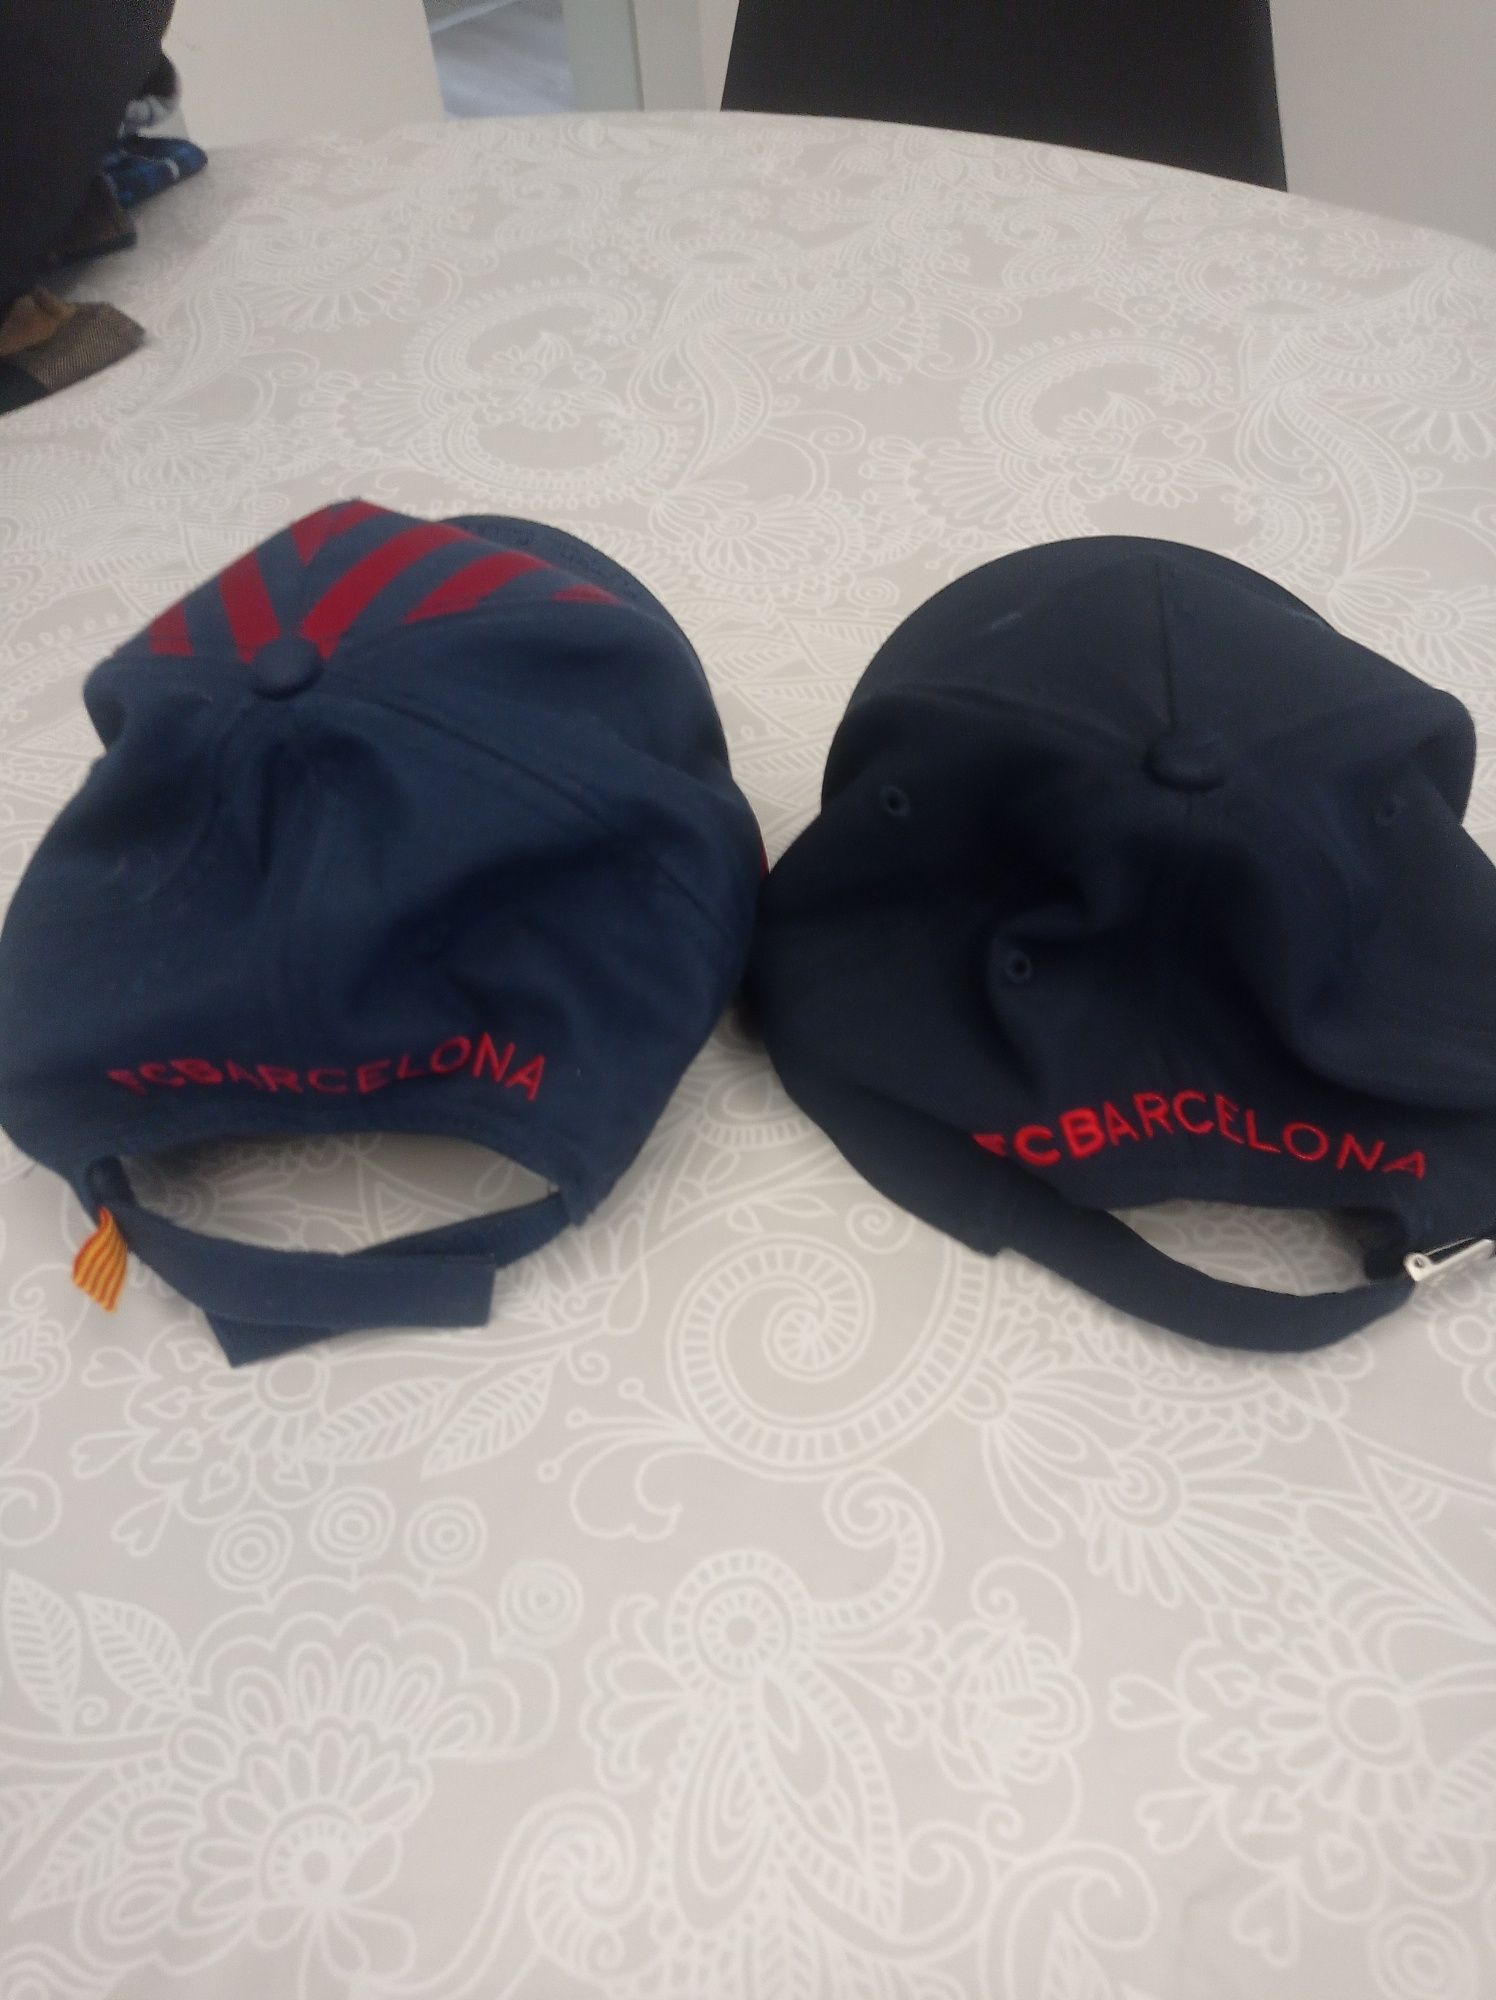 2 chapéus do Barcelona 10 € com pouco uso